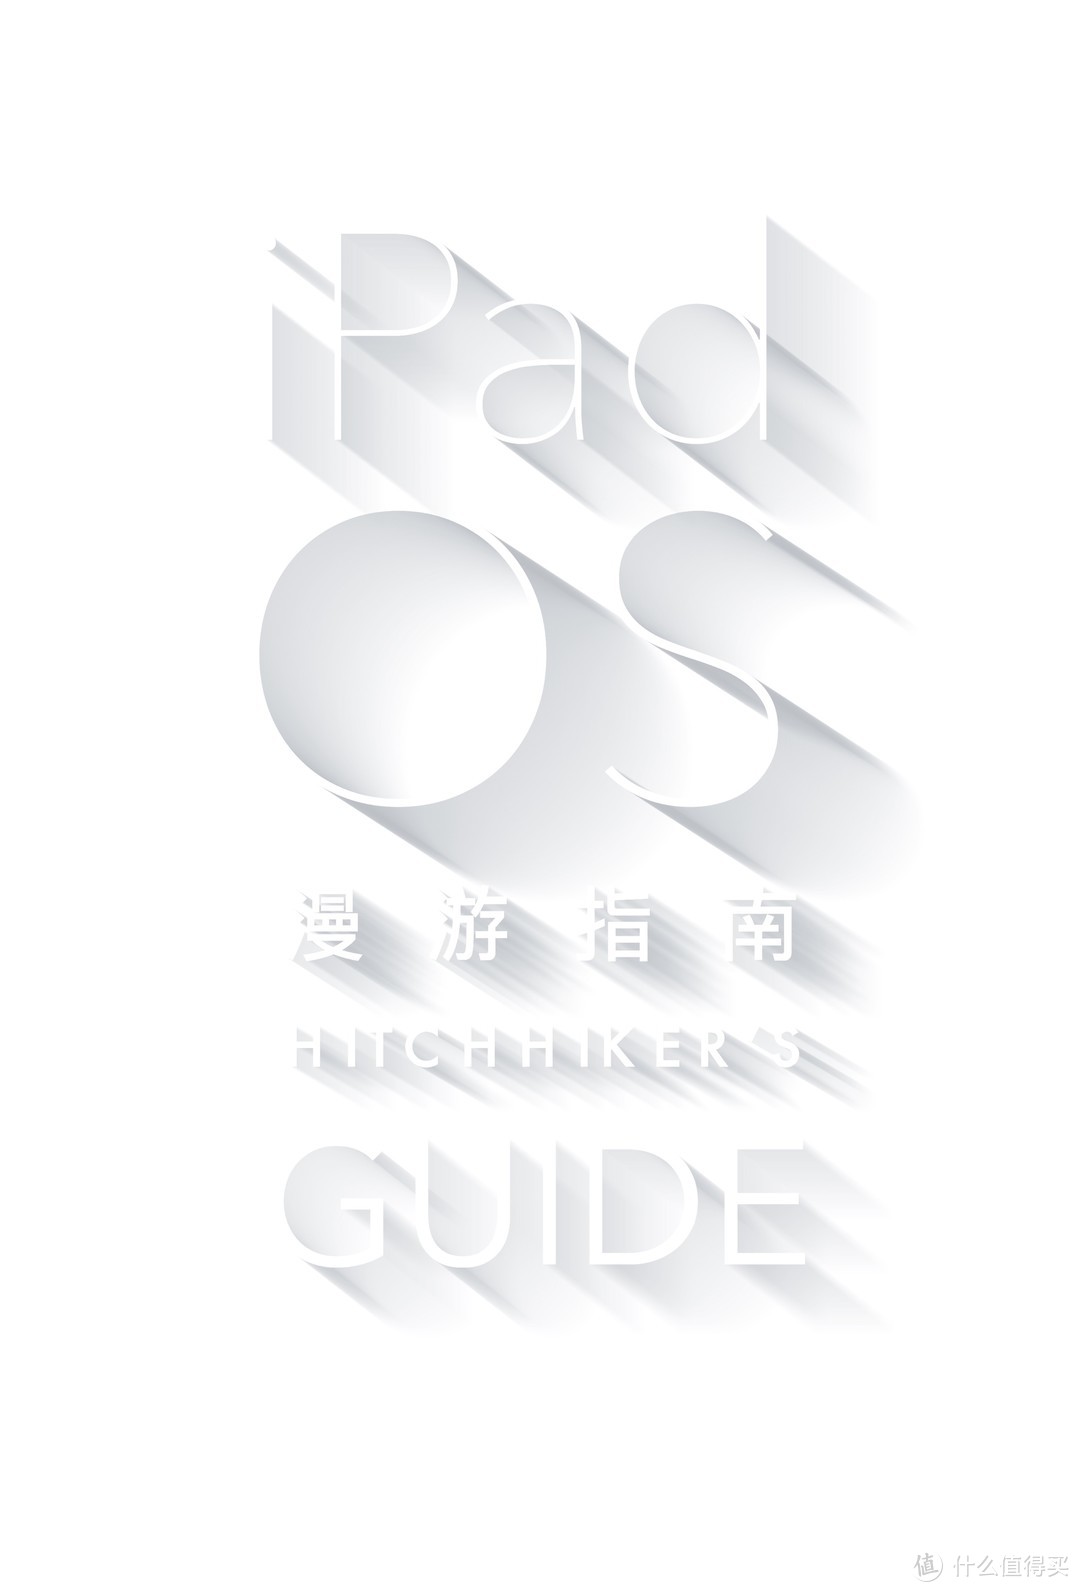 iPad OS 漫游指南